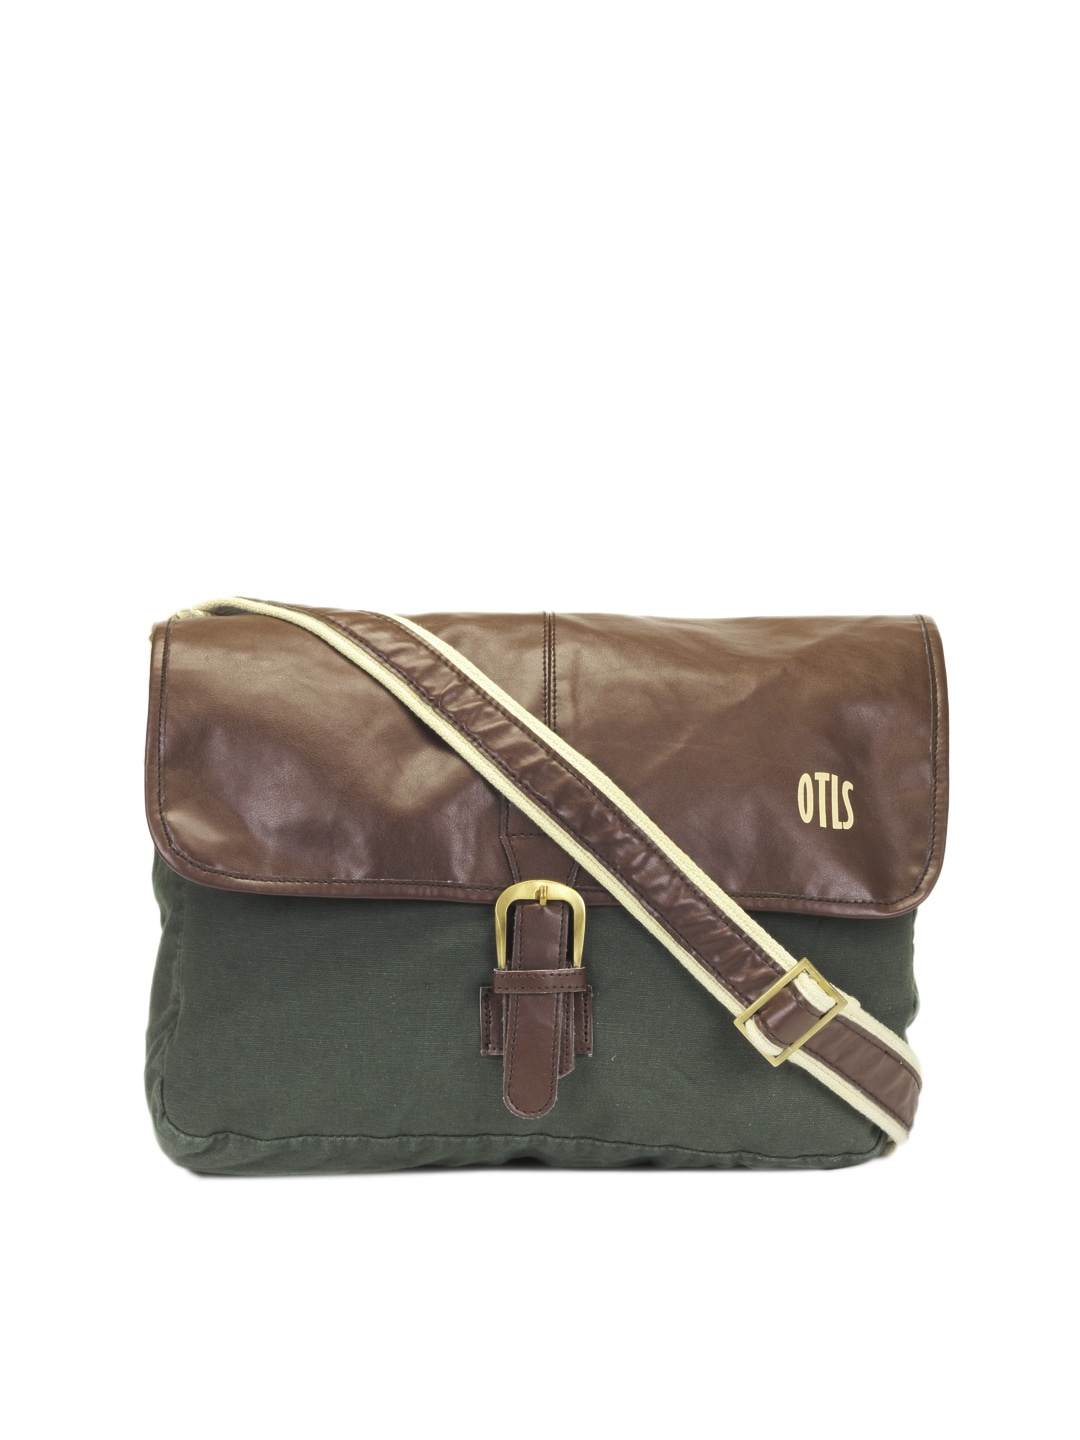 OTLS Unisex Olive Green Messenger Bag